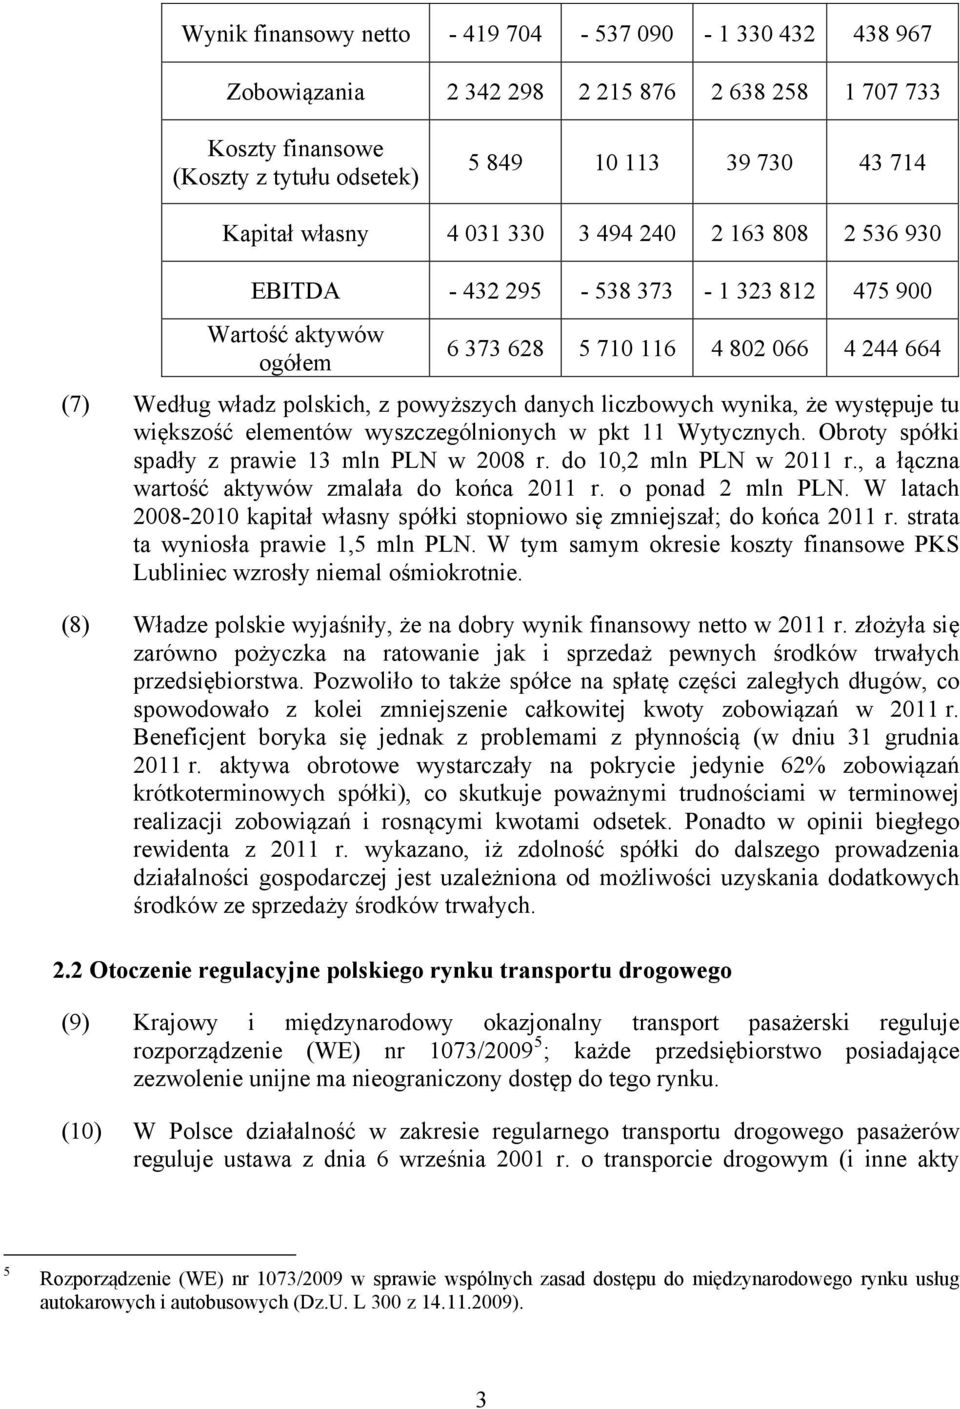 liczbowych wynika, że występuje tu większość elementów wyszczególnionych w pkt 11 Wytycznych. Obroty spółki spadły z prawie 13 mln PLN w 2008 r. do 10,2 mln PLN w 2011 r.